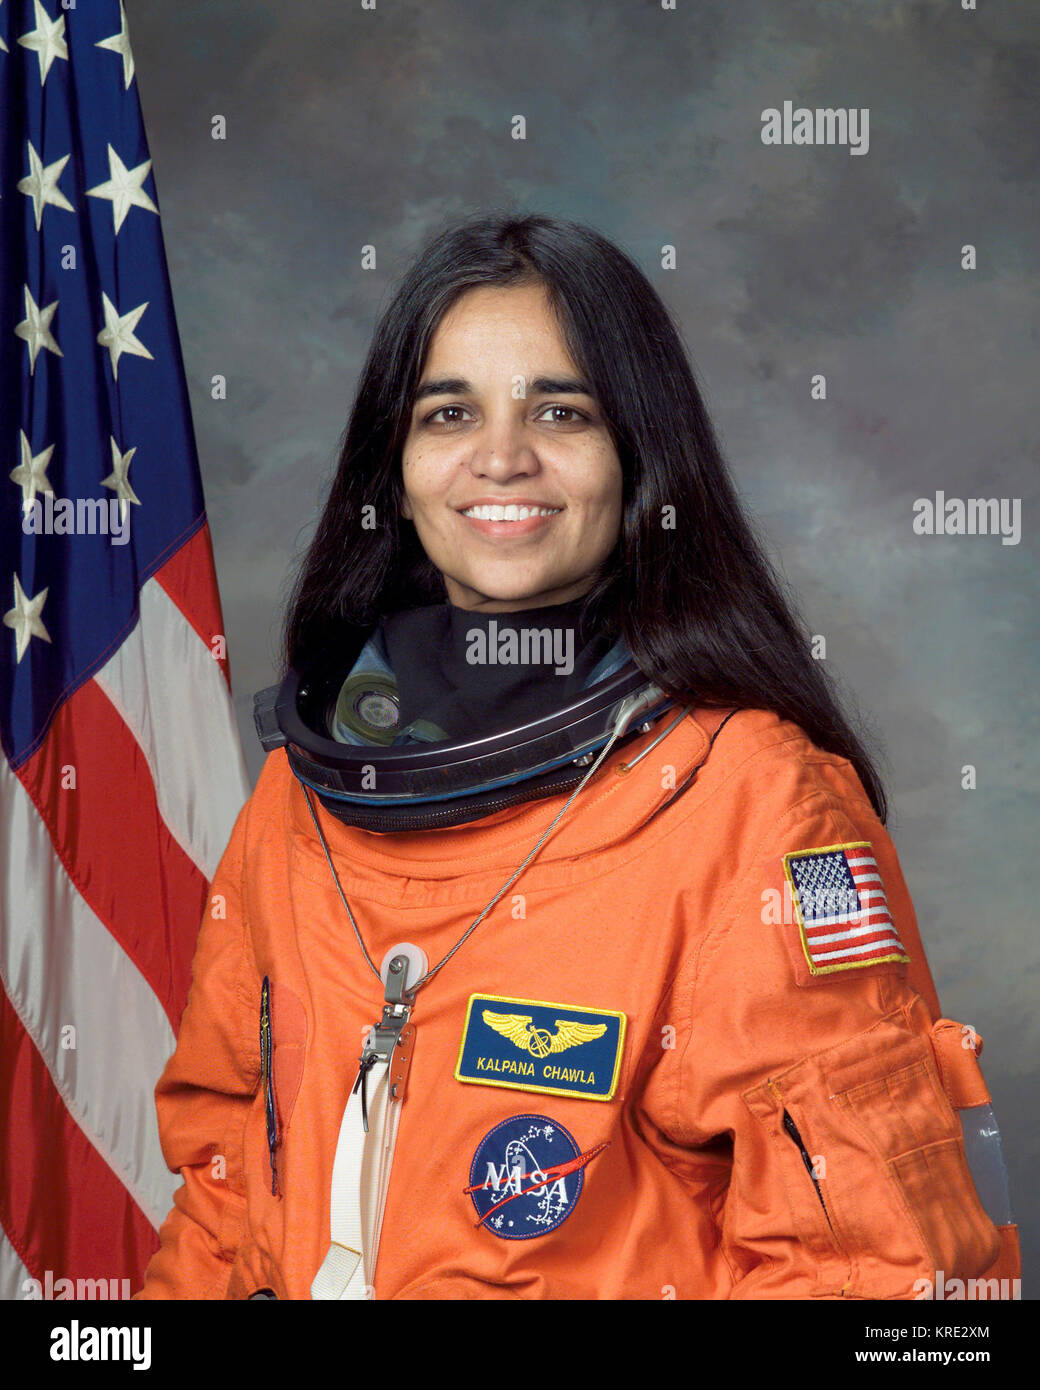 Kalpana Chawla, NASA Foto Portrait in Orange Anzug Stockfotografie - Alamy